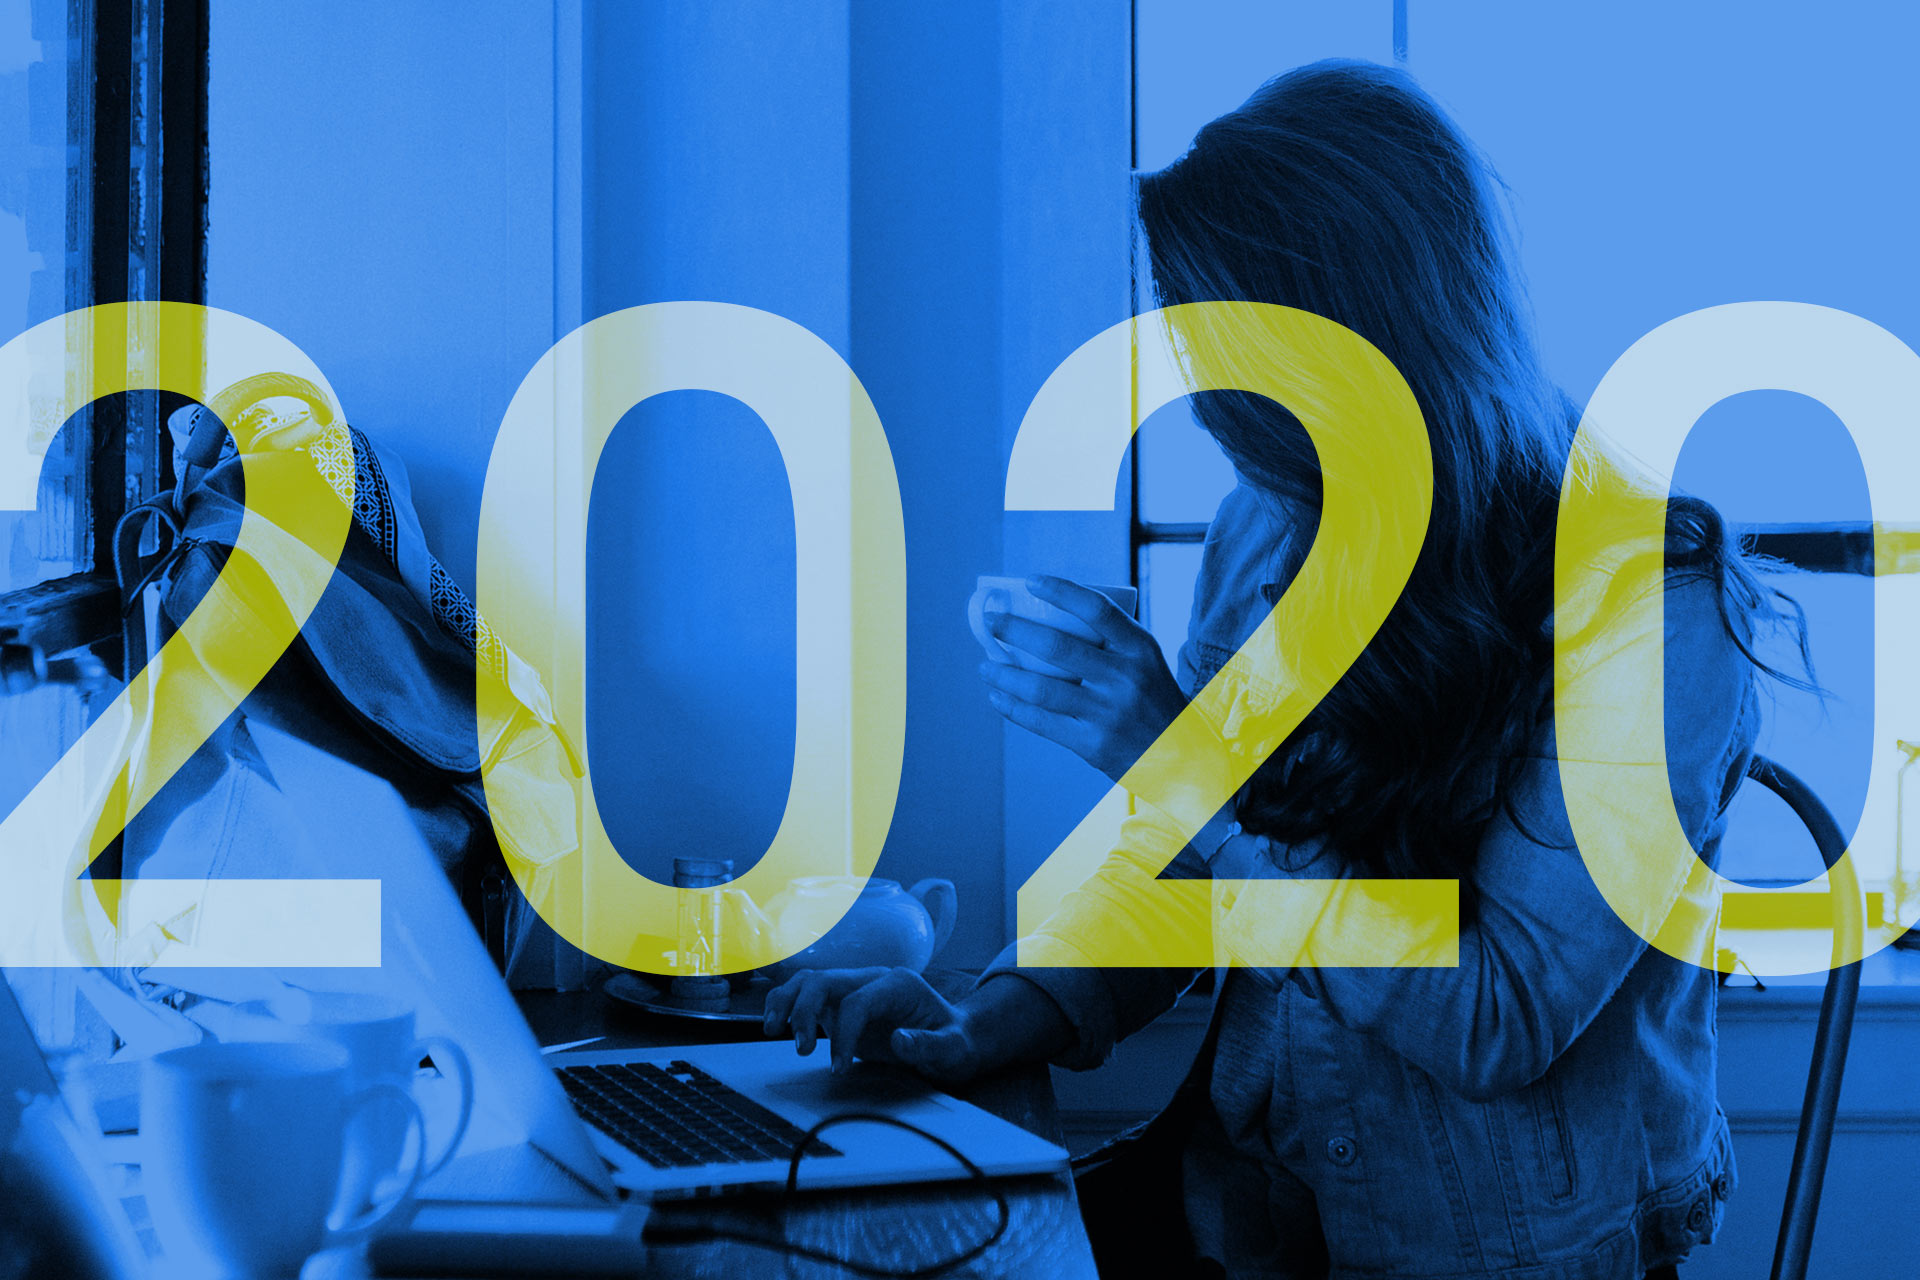 Im Vordergrund steht 2020, im Hintergrund ist eine Person zu sehen, die vor ihrem Laptop sitzt und arbeitet.